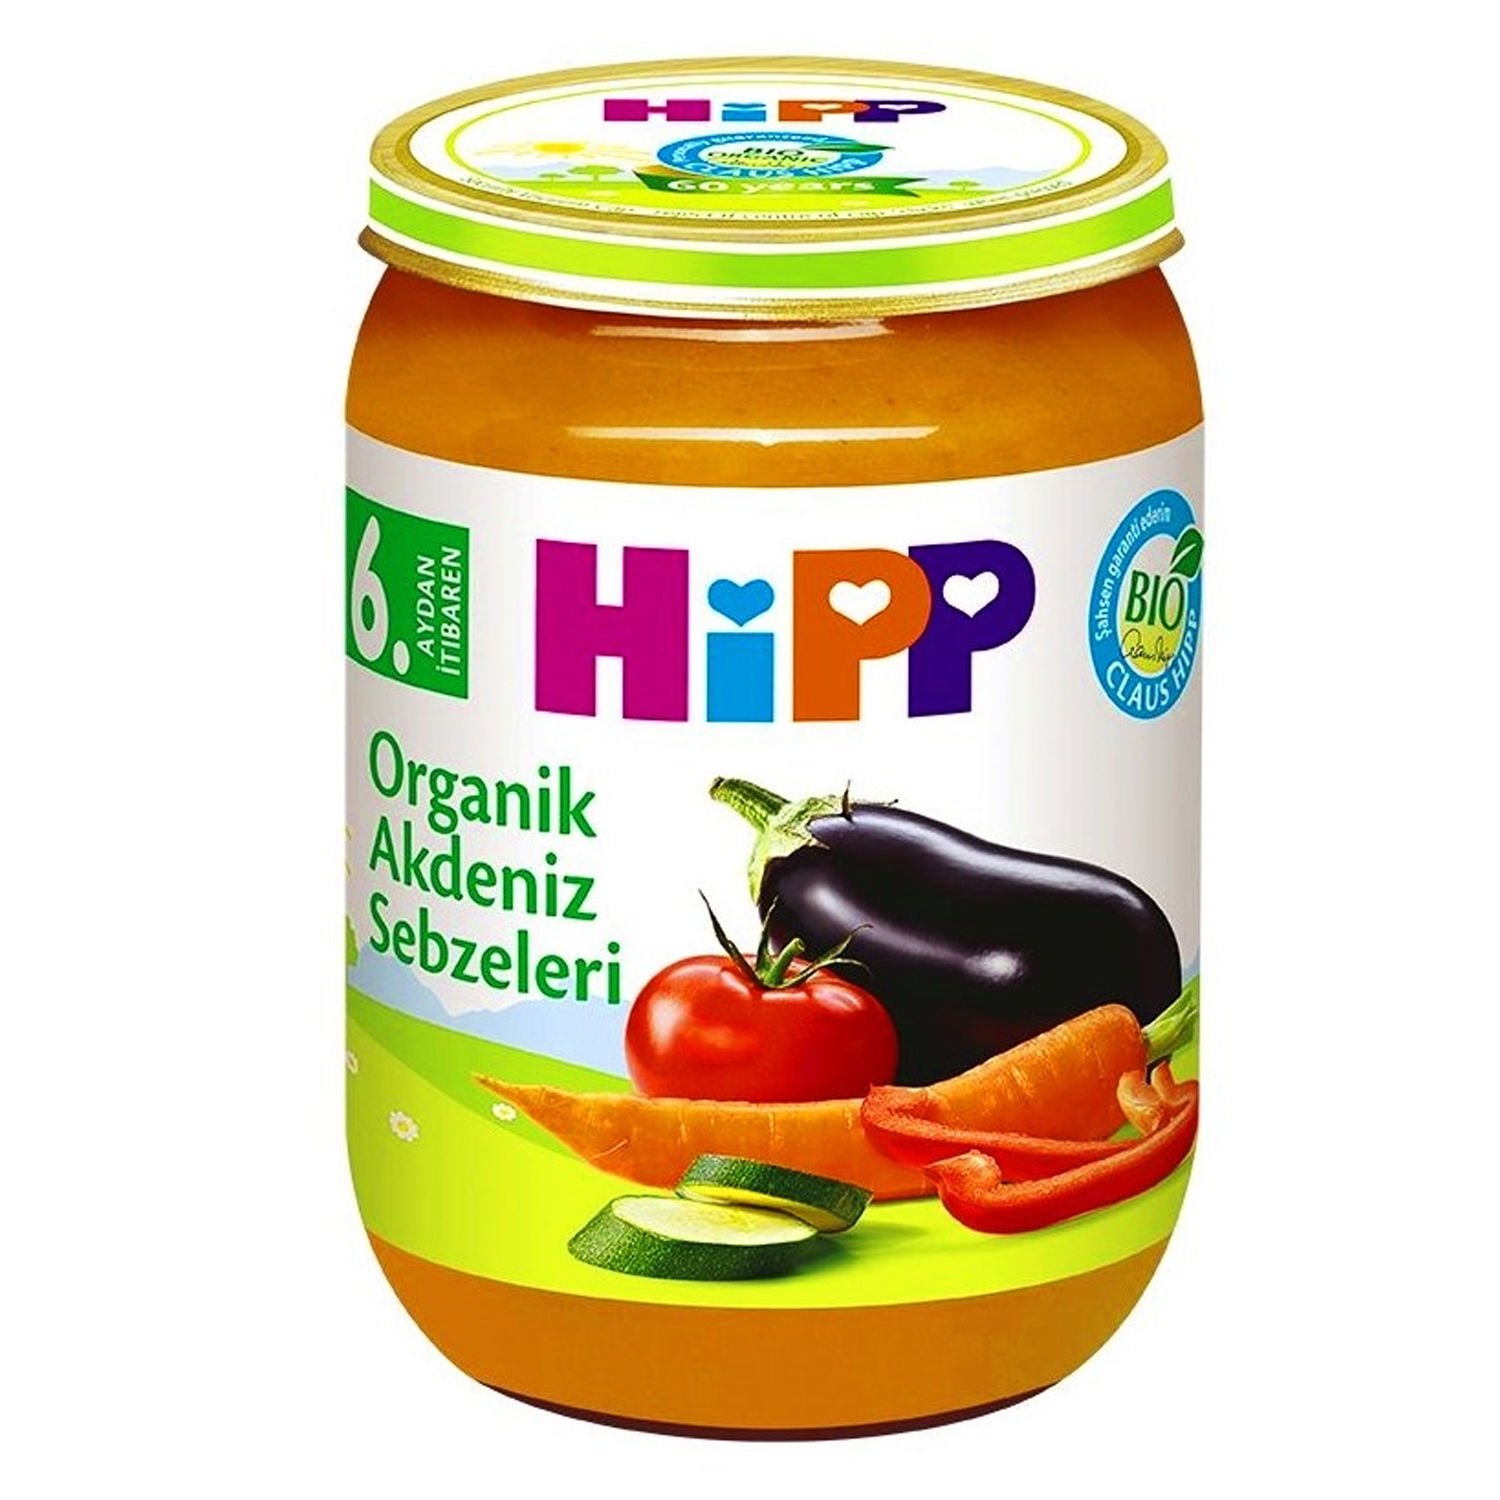 Hipp Kavanoz Maması Organik Akdeniz Sebzeleri 190 gr